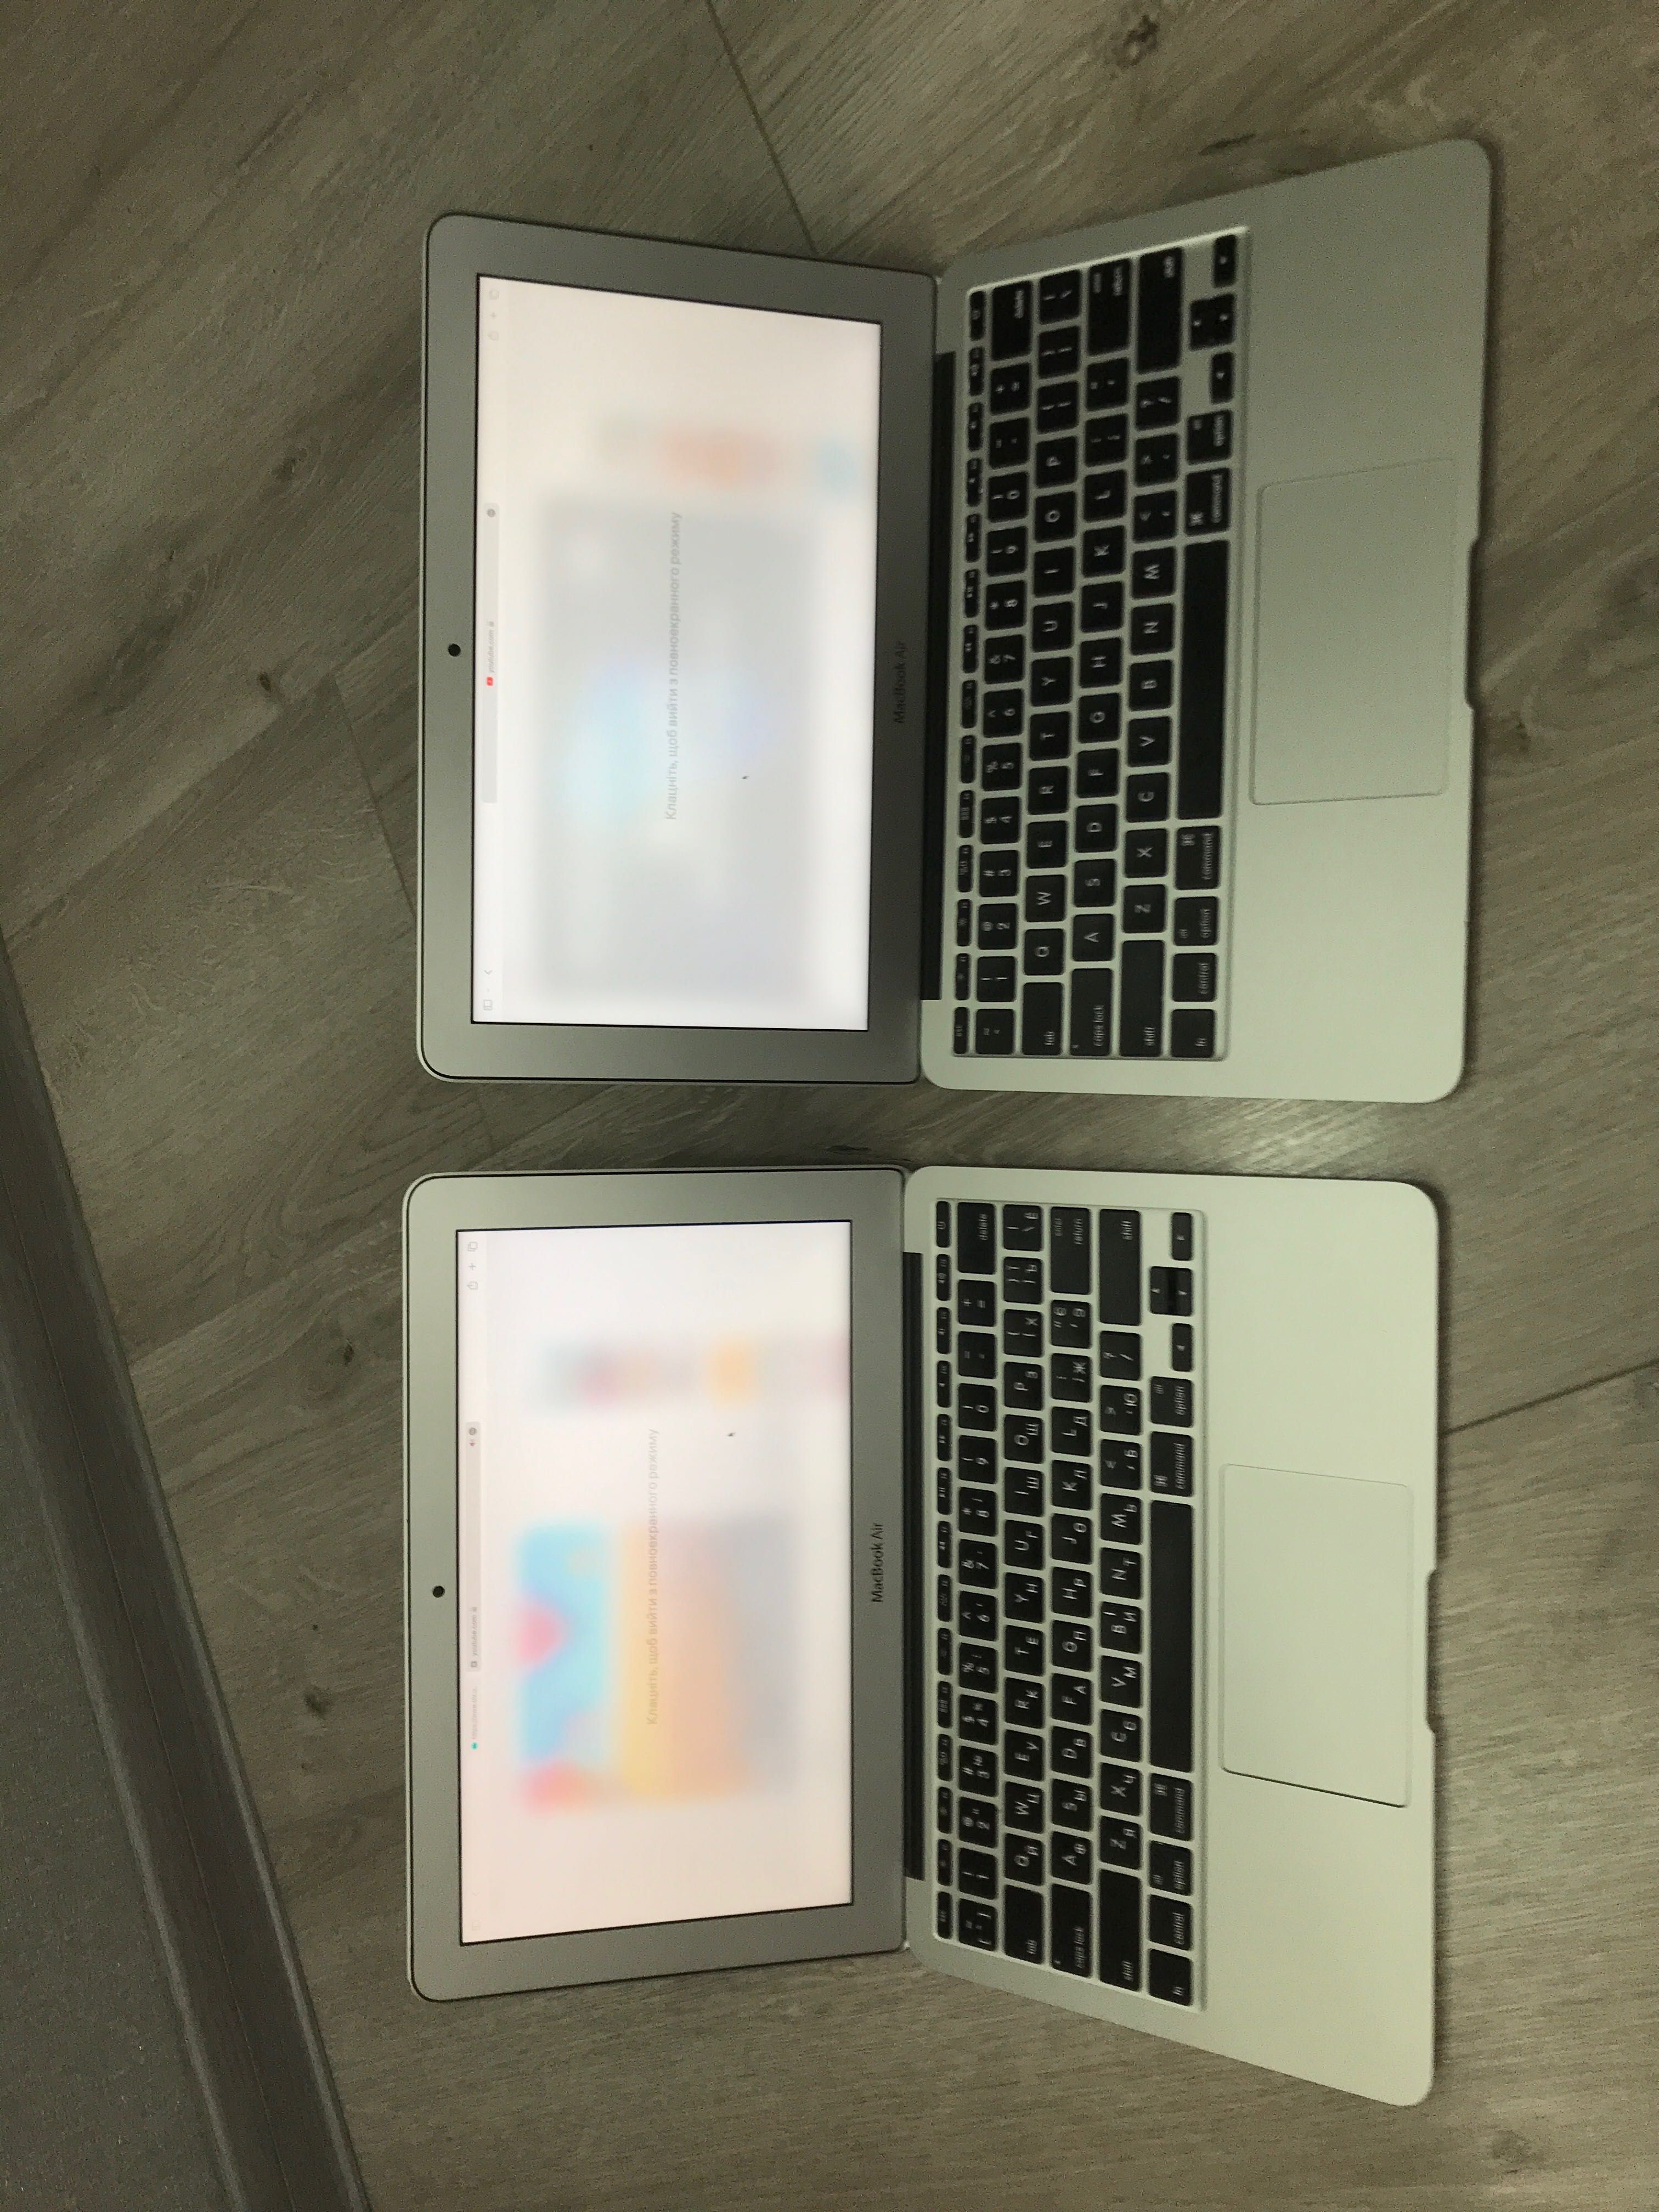 MacBook Air 11" 2014 8/128